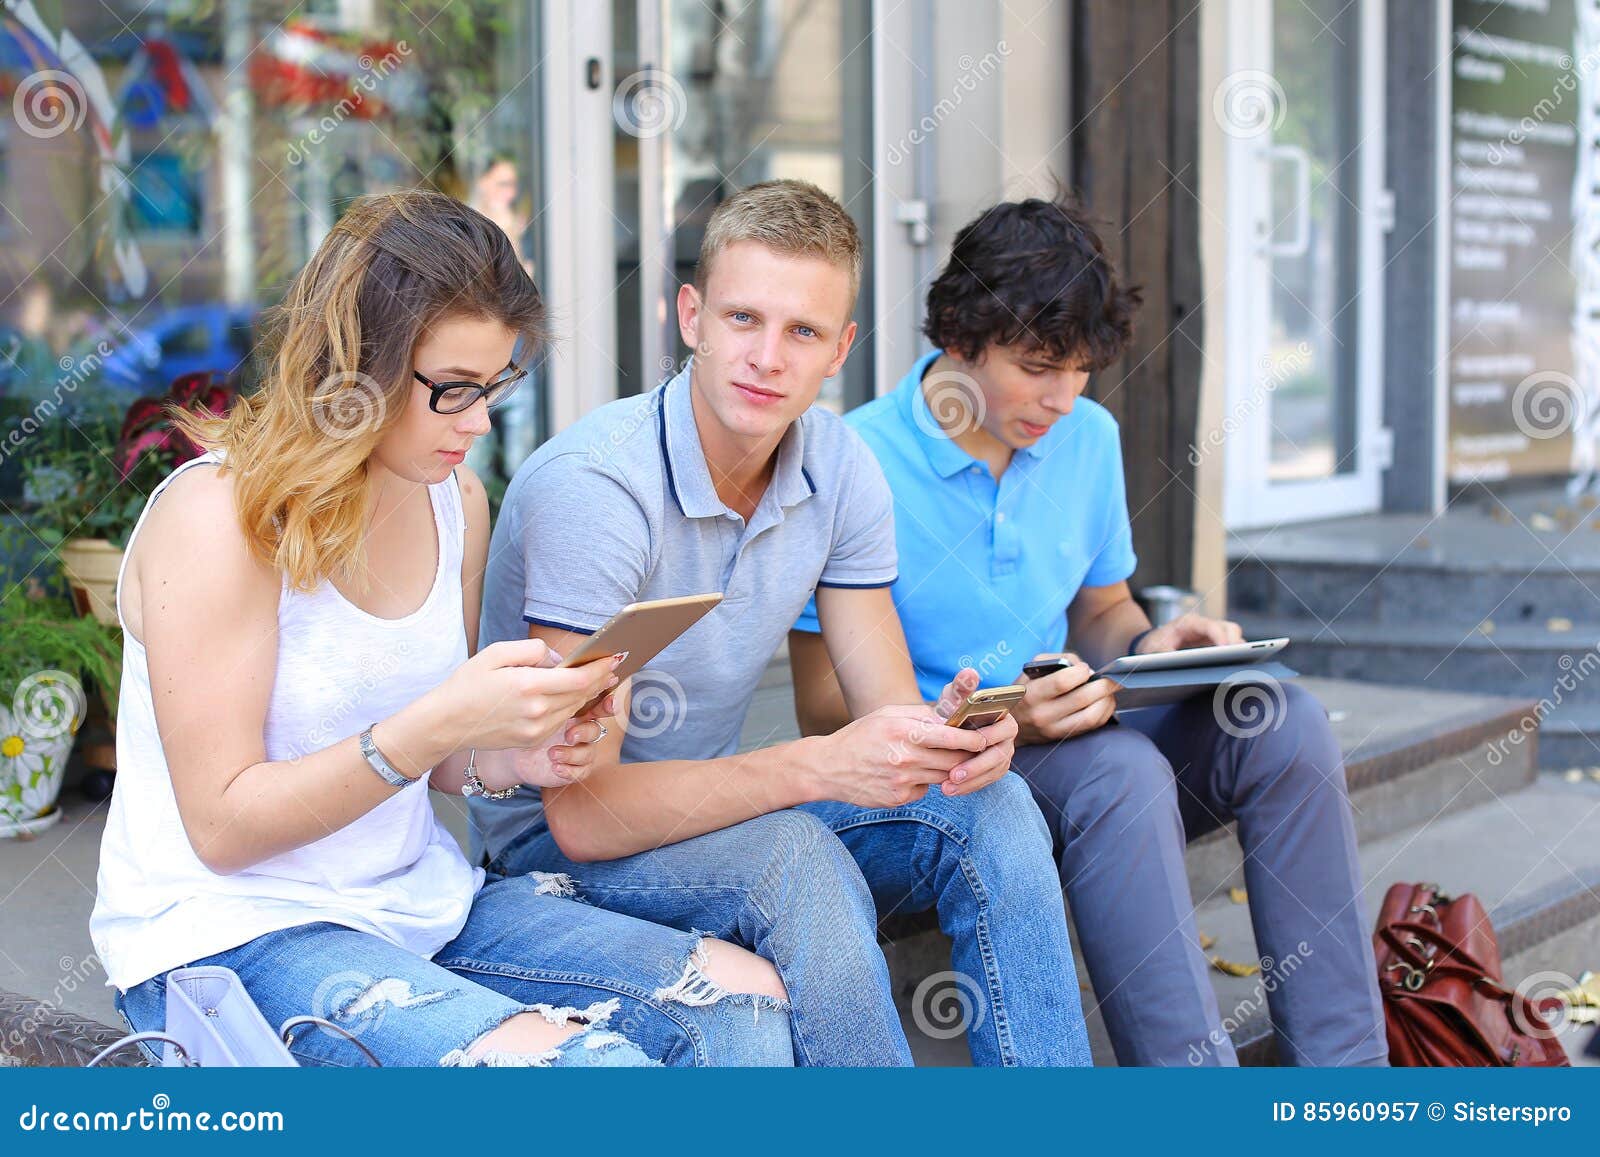 Друзья сидящие в телефоне. Трое друзей болтают на улице. Люди разговаривают на улице. Фотомодели в феврале на улице болтают. Люди остановились на улице и разговаривают.